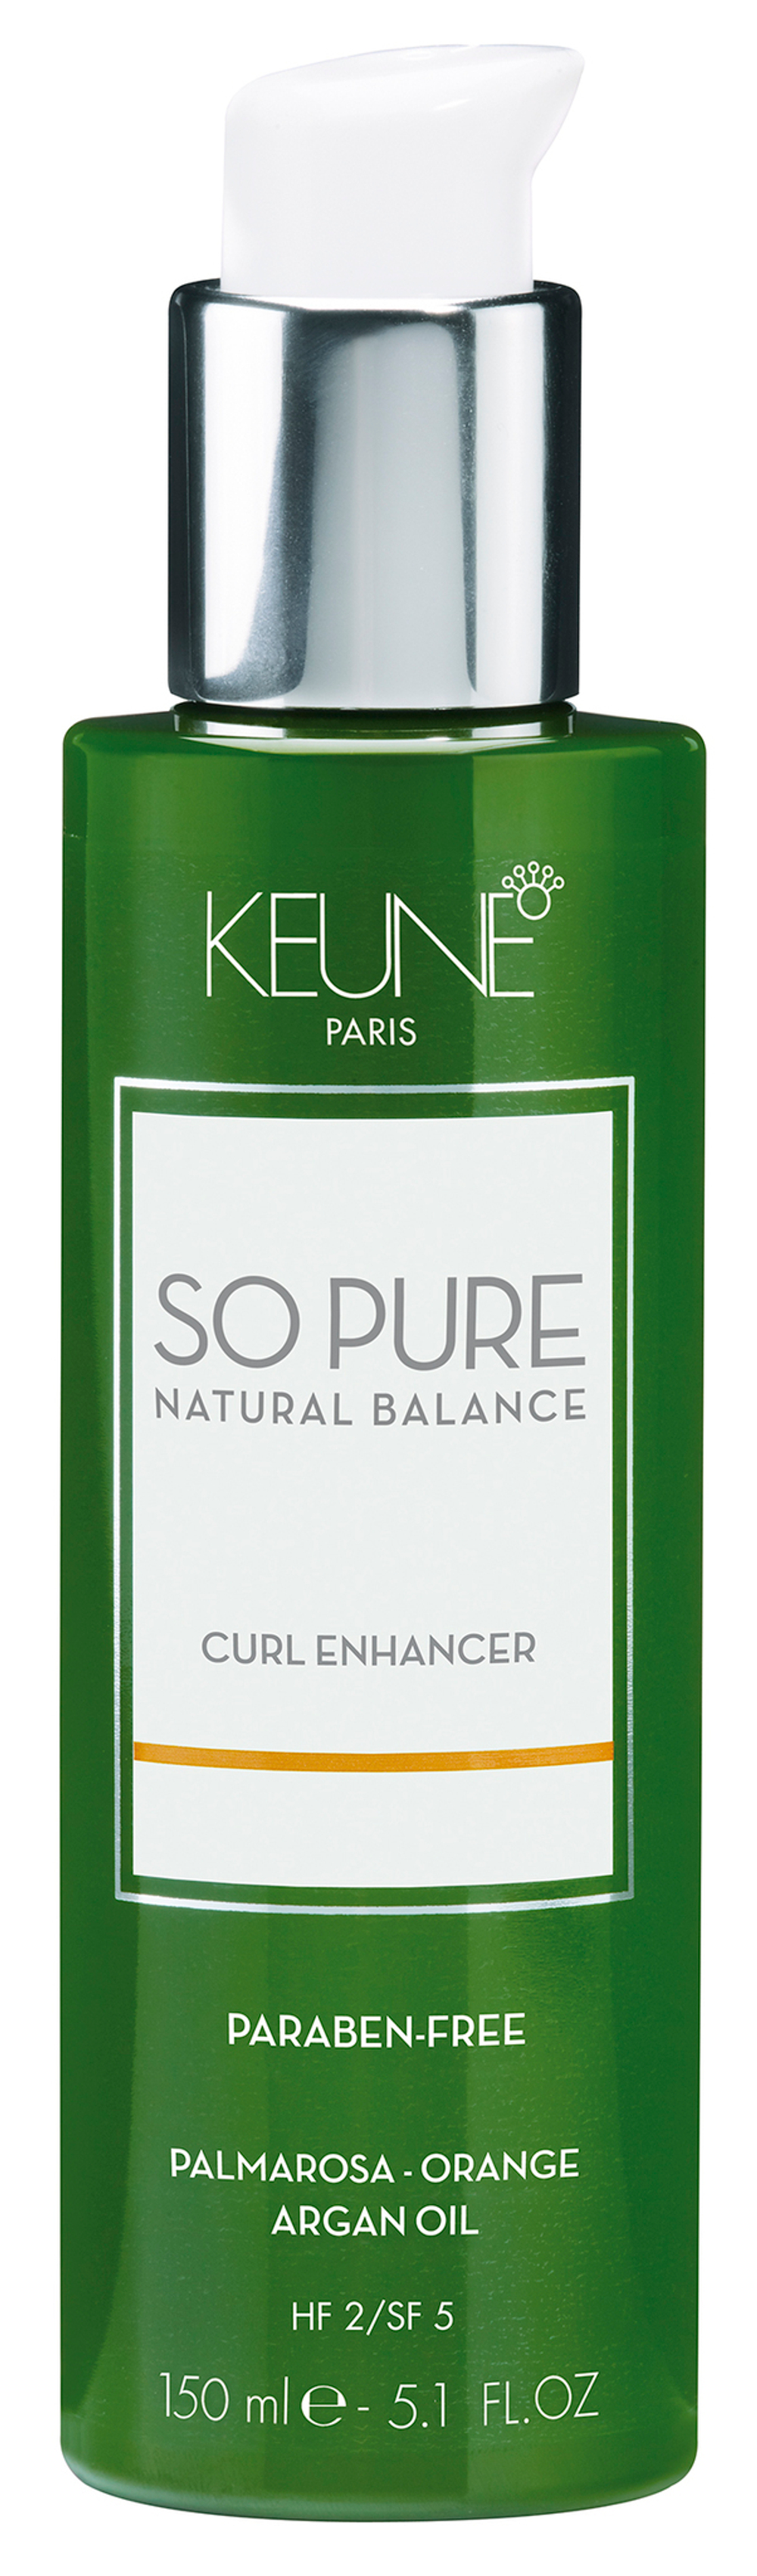 Keune So Pure СПА крем Укрощённый локон Curl Enhancer 150 мл